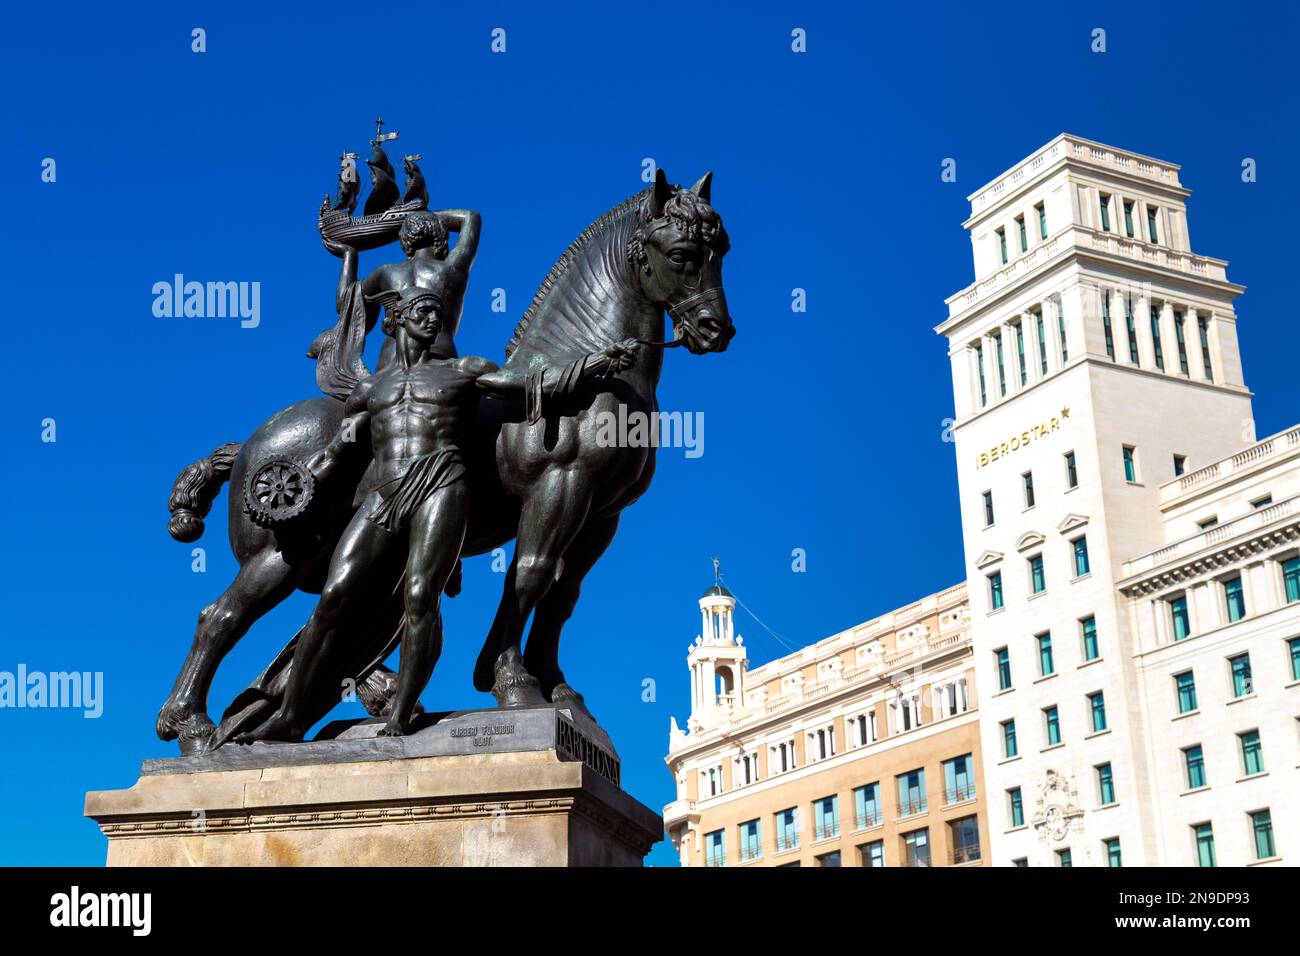 Scultura equestre allegorica di dio Hermes e di una donna in possesso di una nave, Placa de Catalunya, Barcellona, Spagna Foto Stock